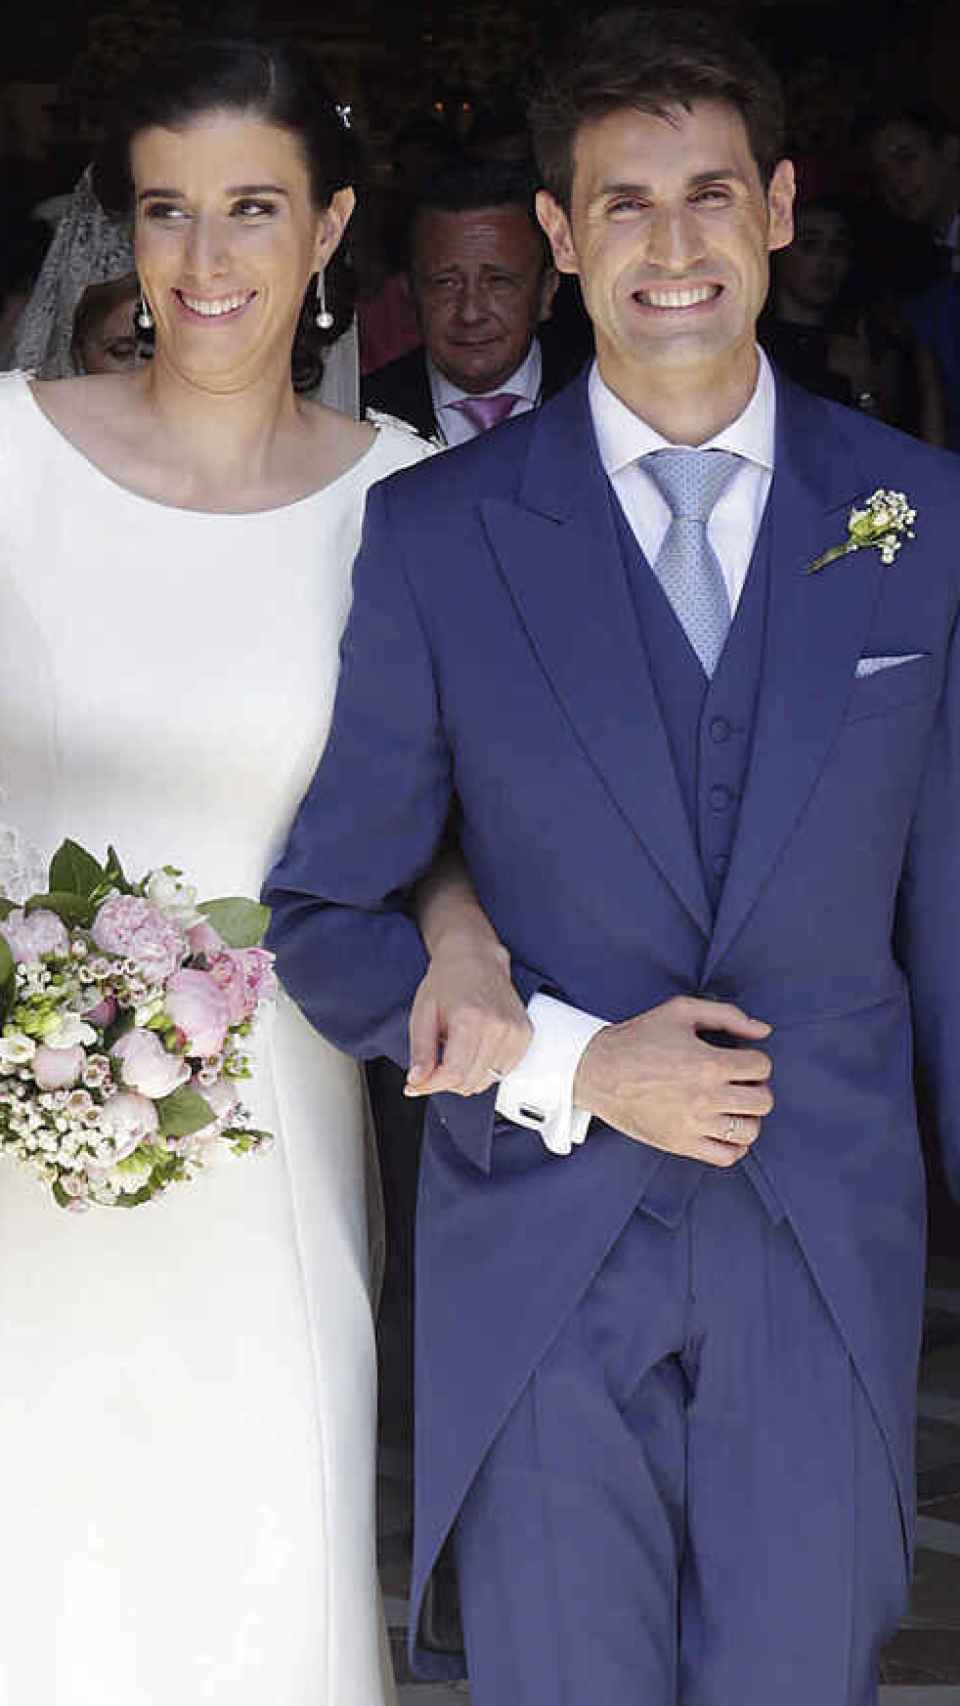 Blanca y Elu Moreno el día de su boda en 2017.